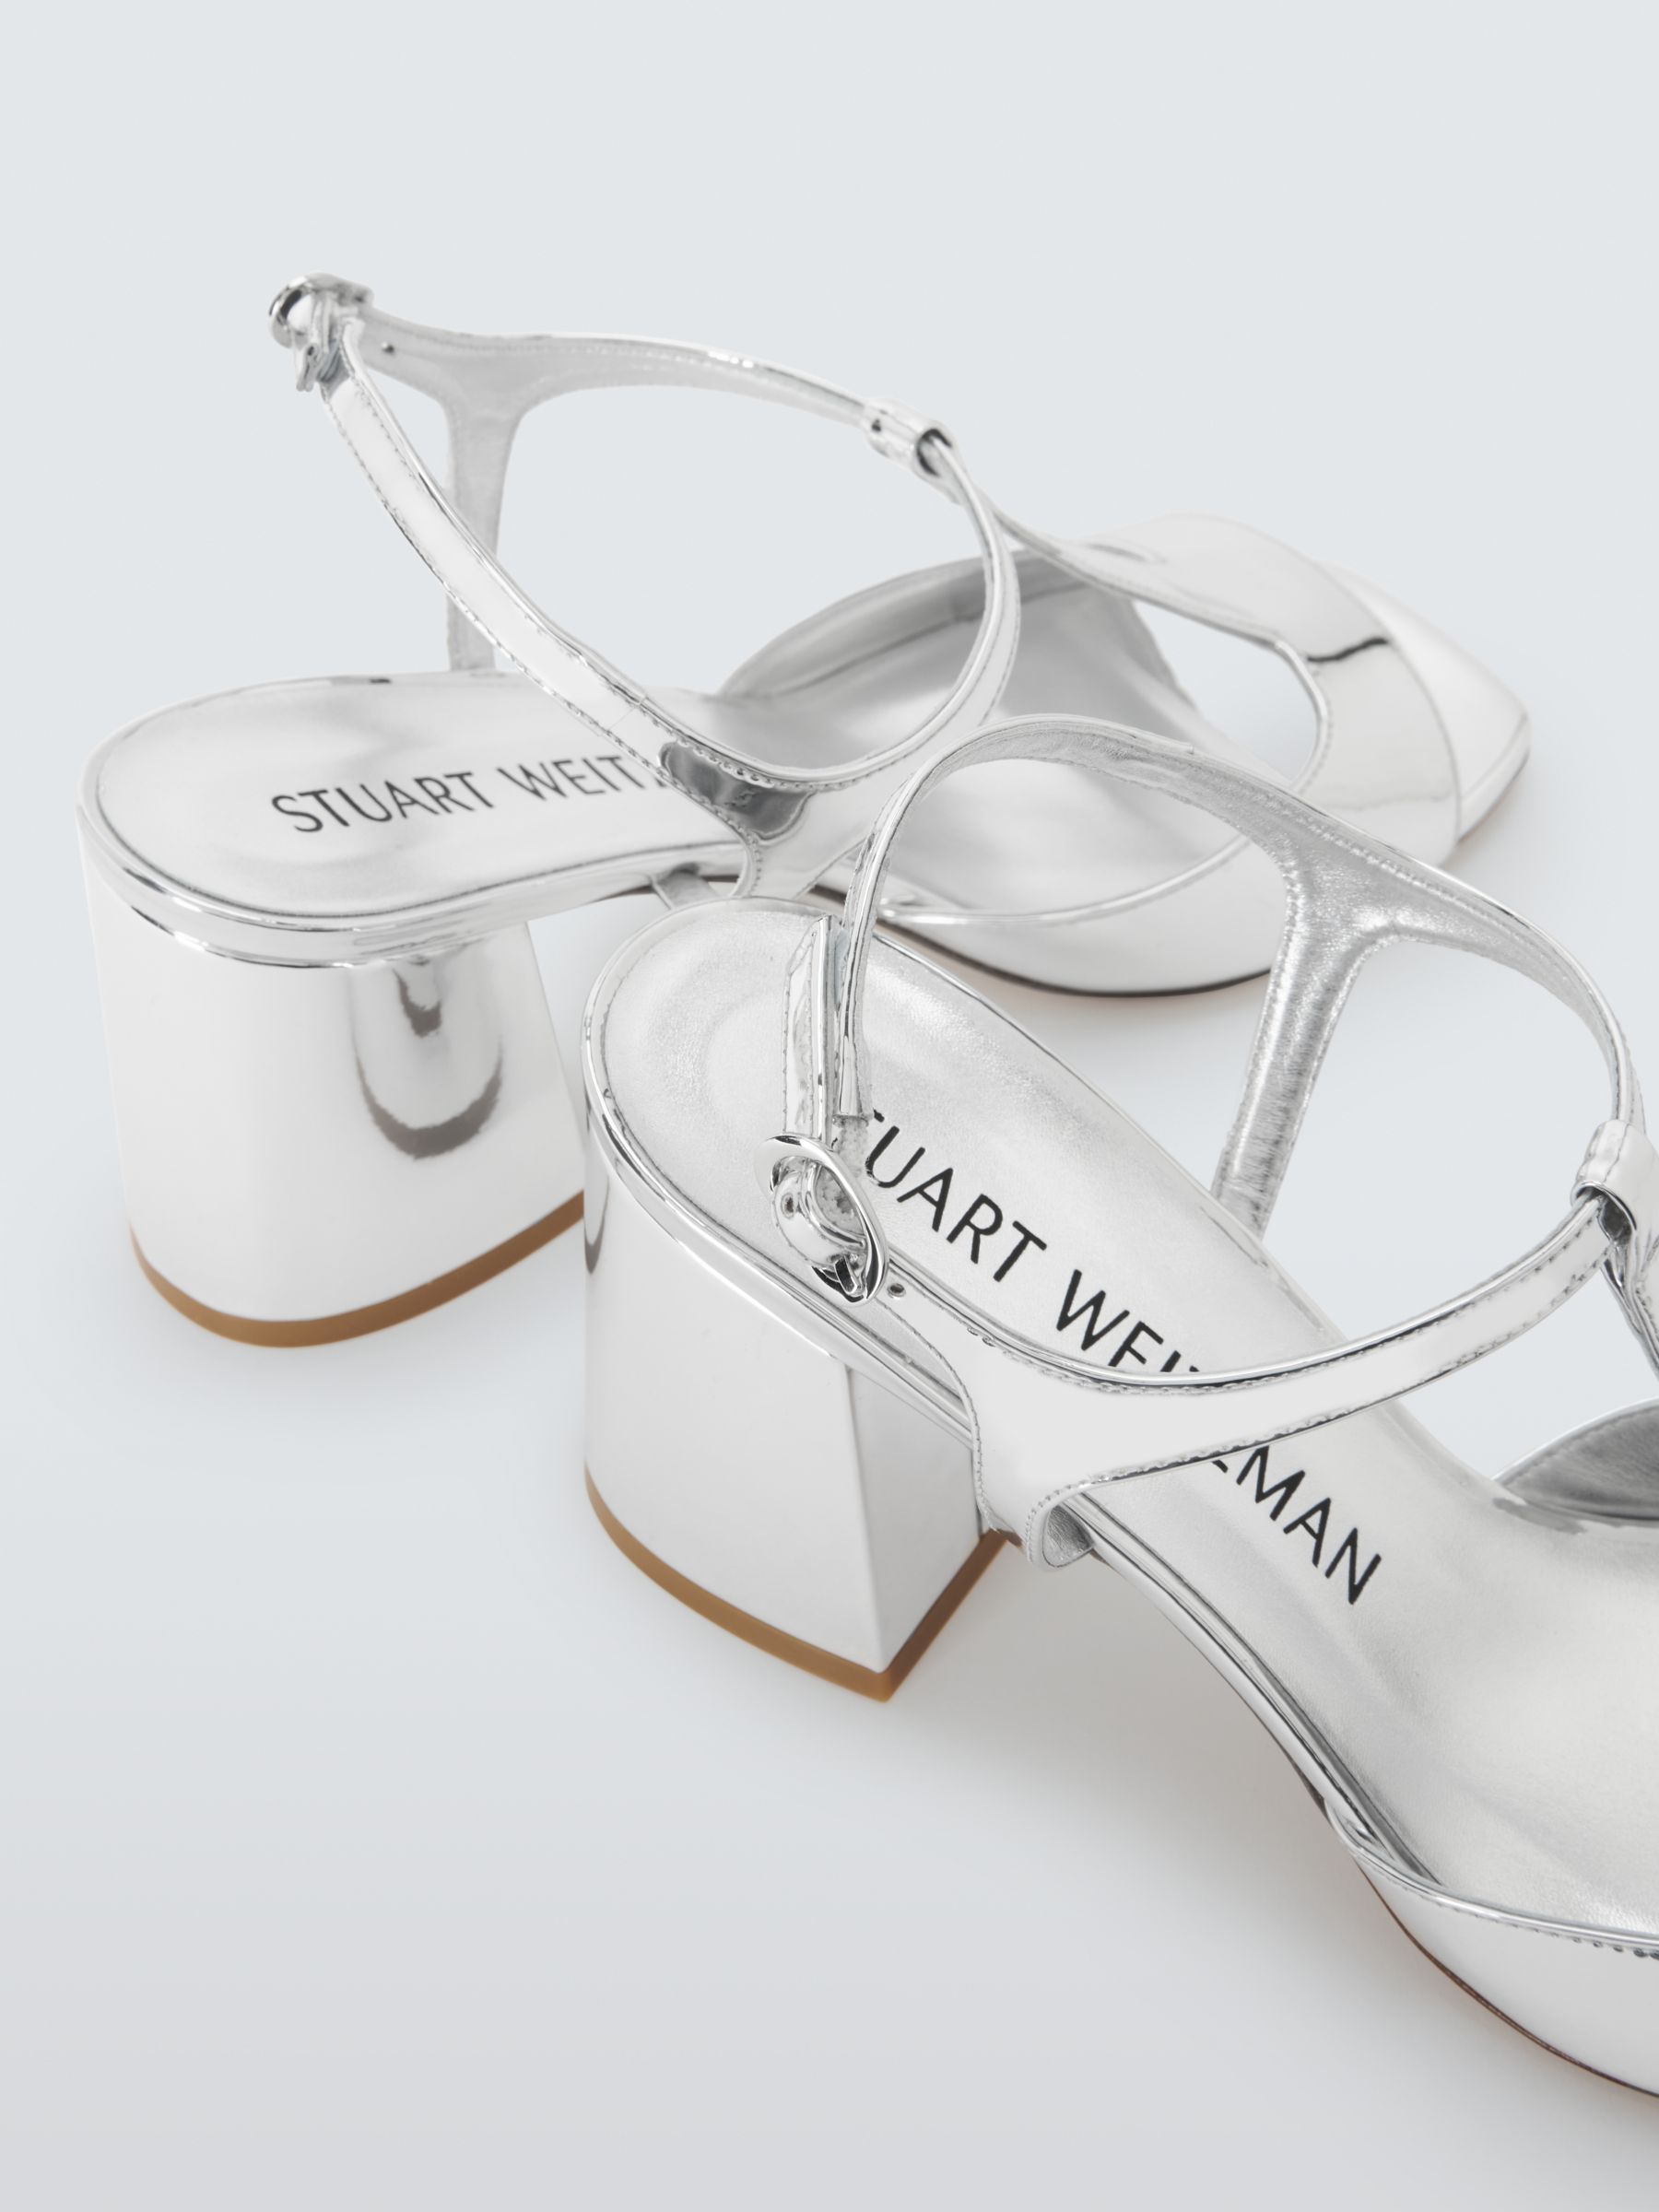 Stuart Weitzman Nudista 75 Block Heel Sandals, Silver, 6